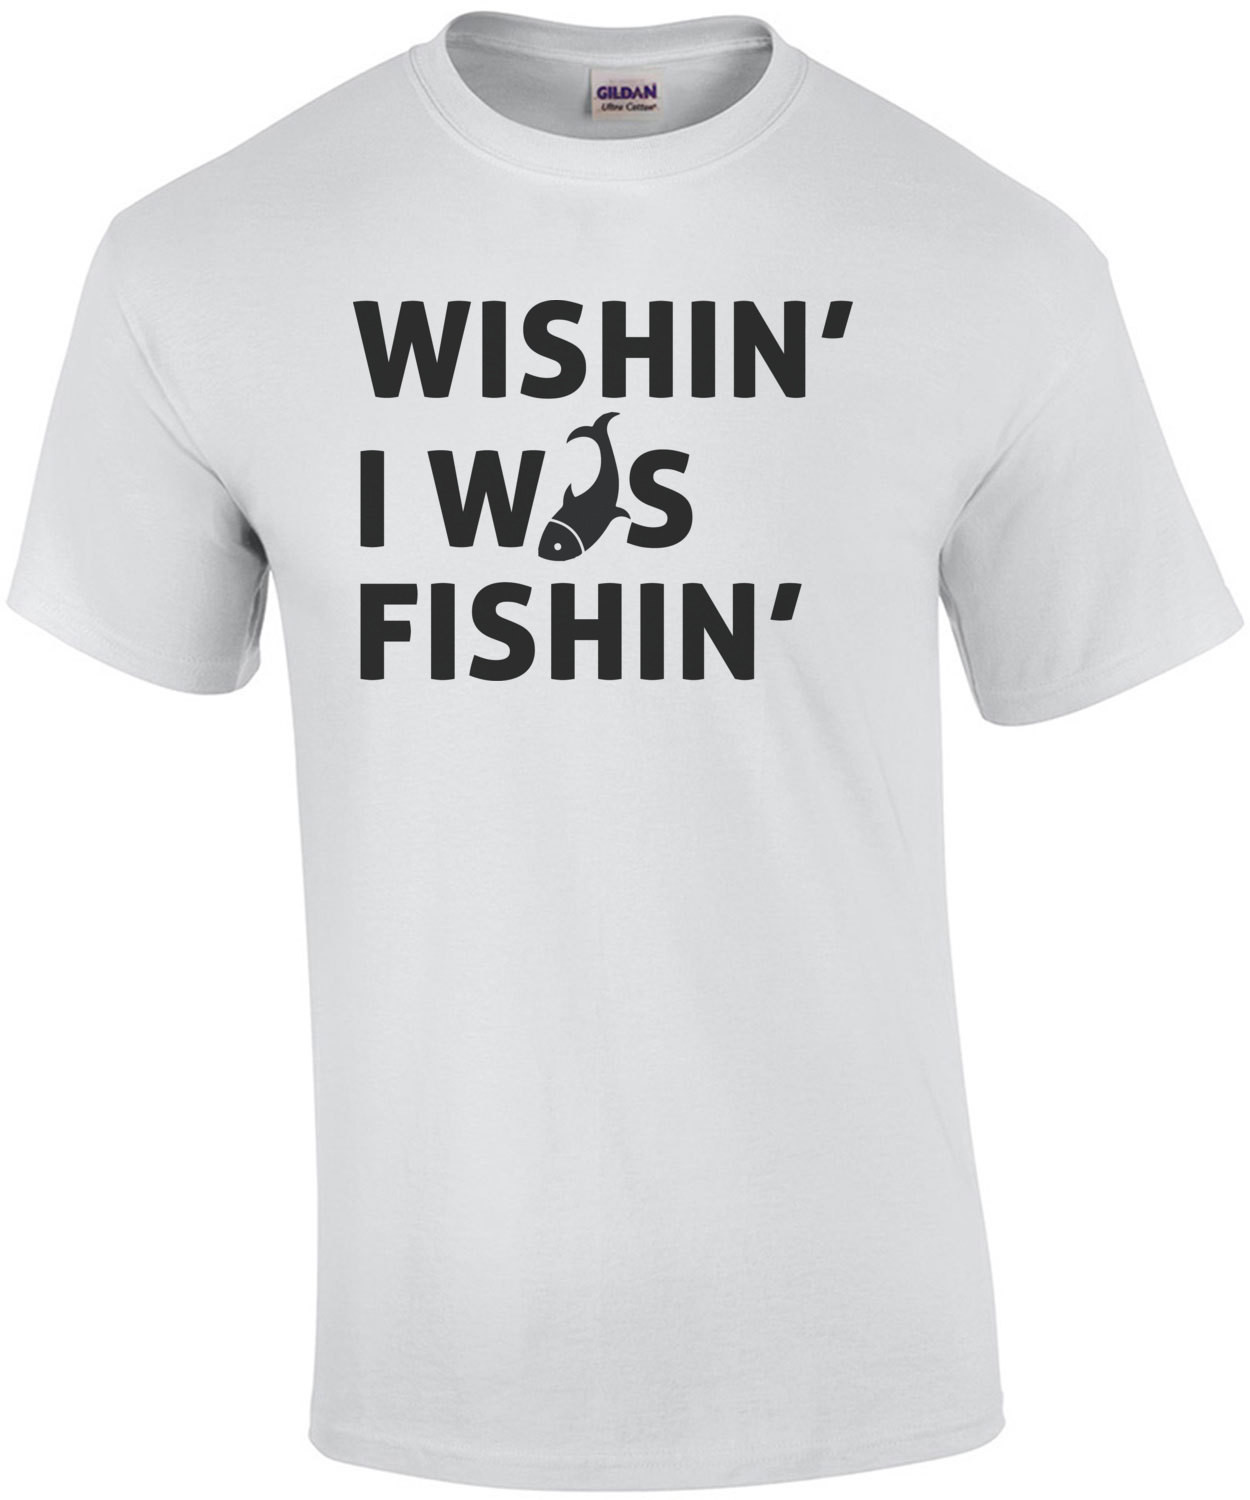 Wishin I was Fishin - Fishing